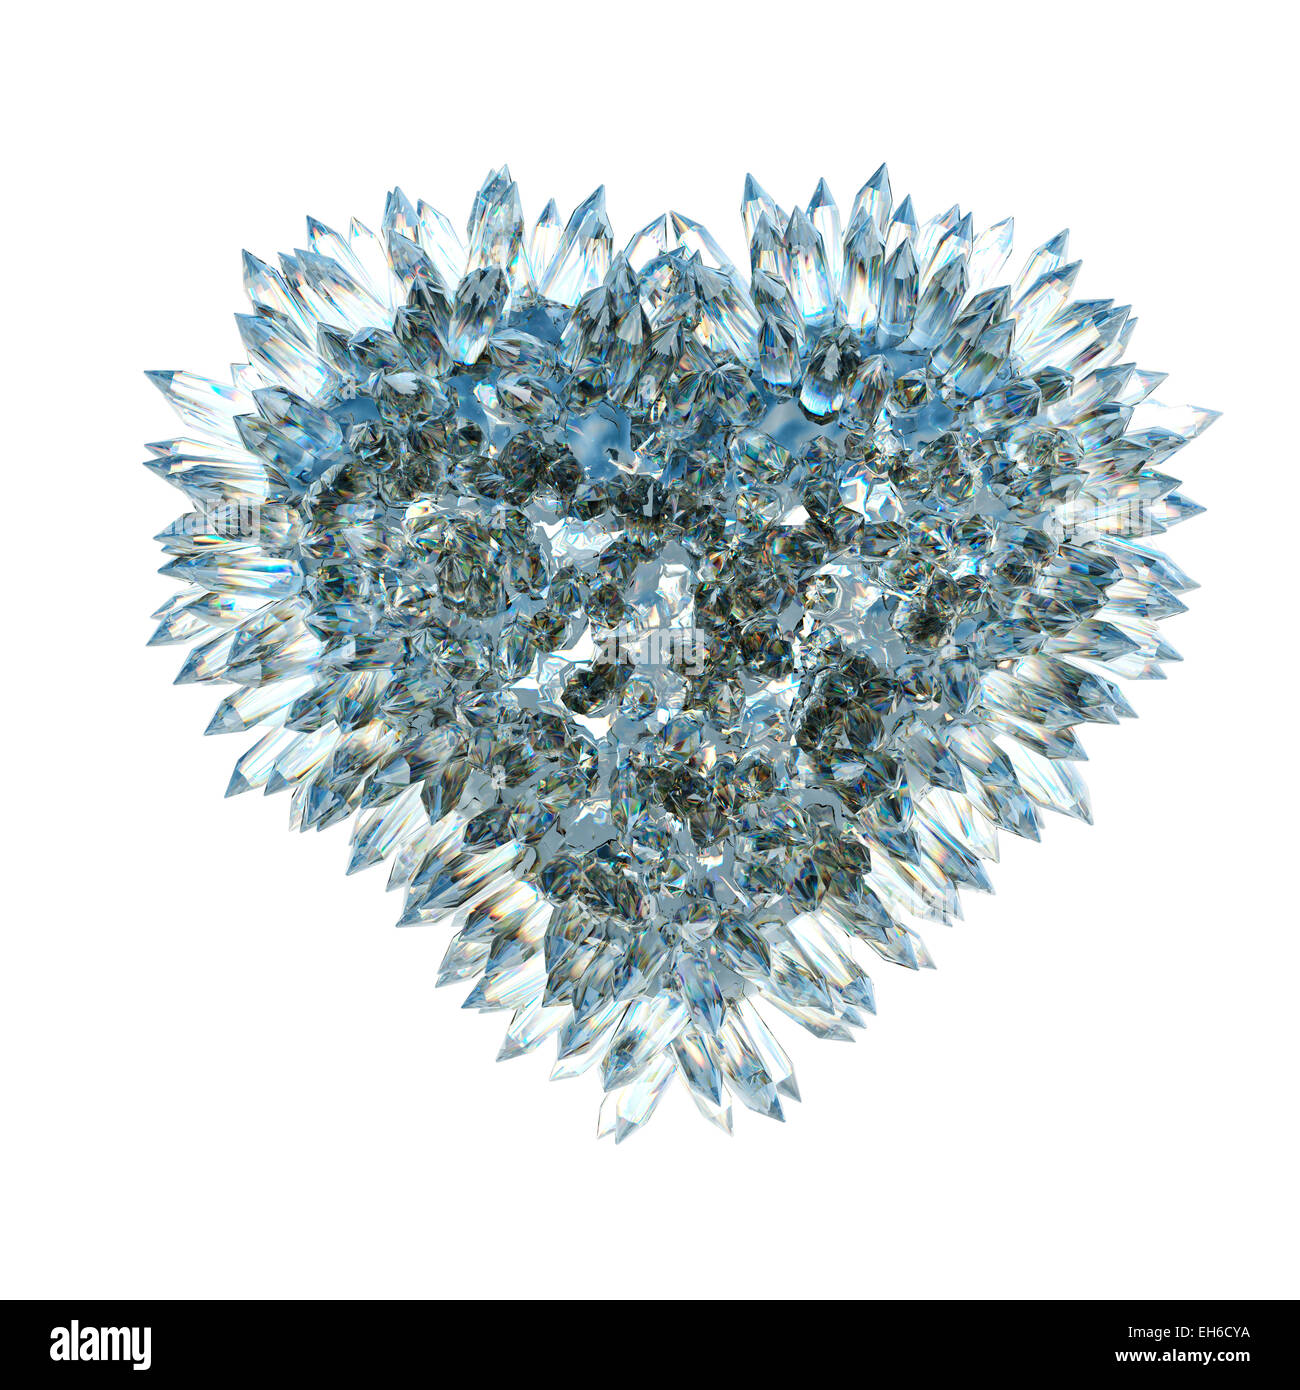 Sharp amore e gelosia: crystal forma di cuore isolato su bianco Foto Stock